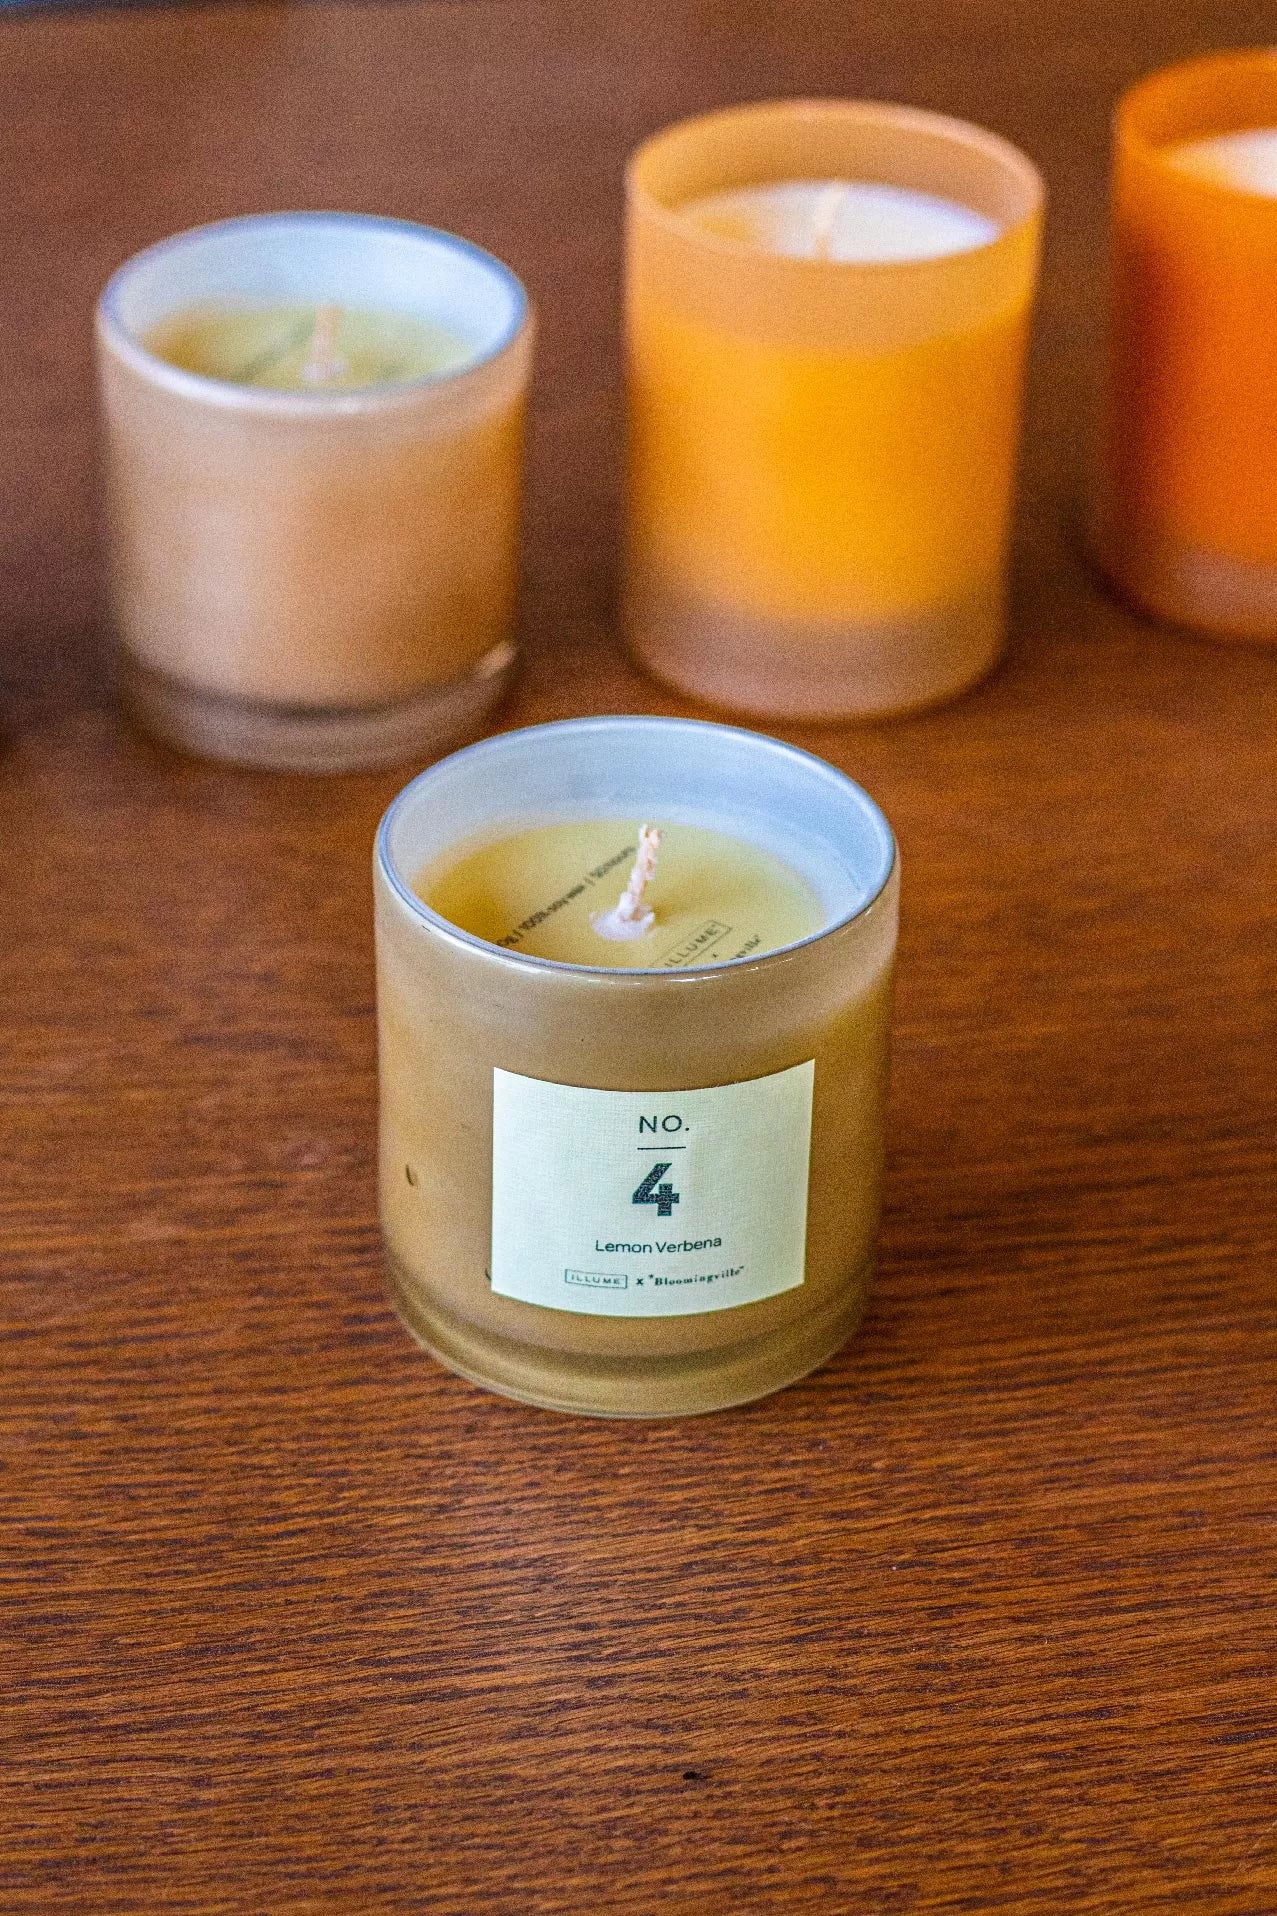 NO.4 Lemon Verbena Scented Candle Natural Wax